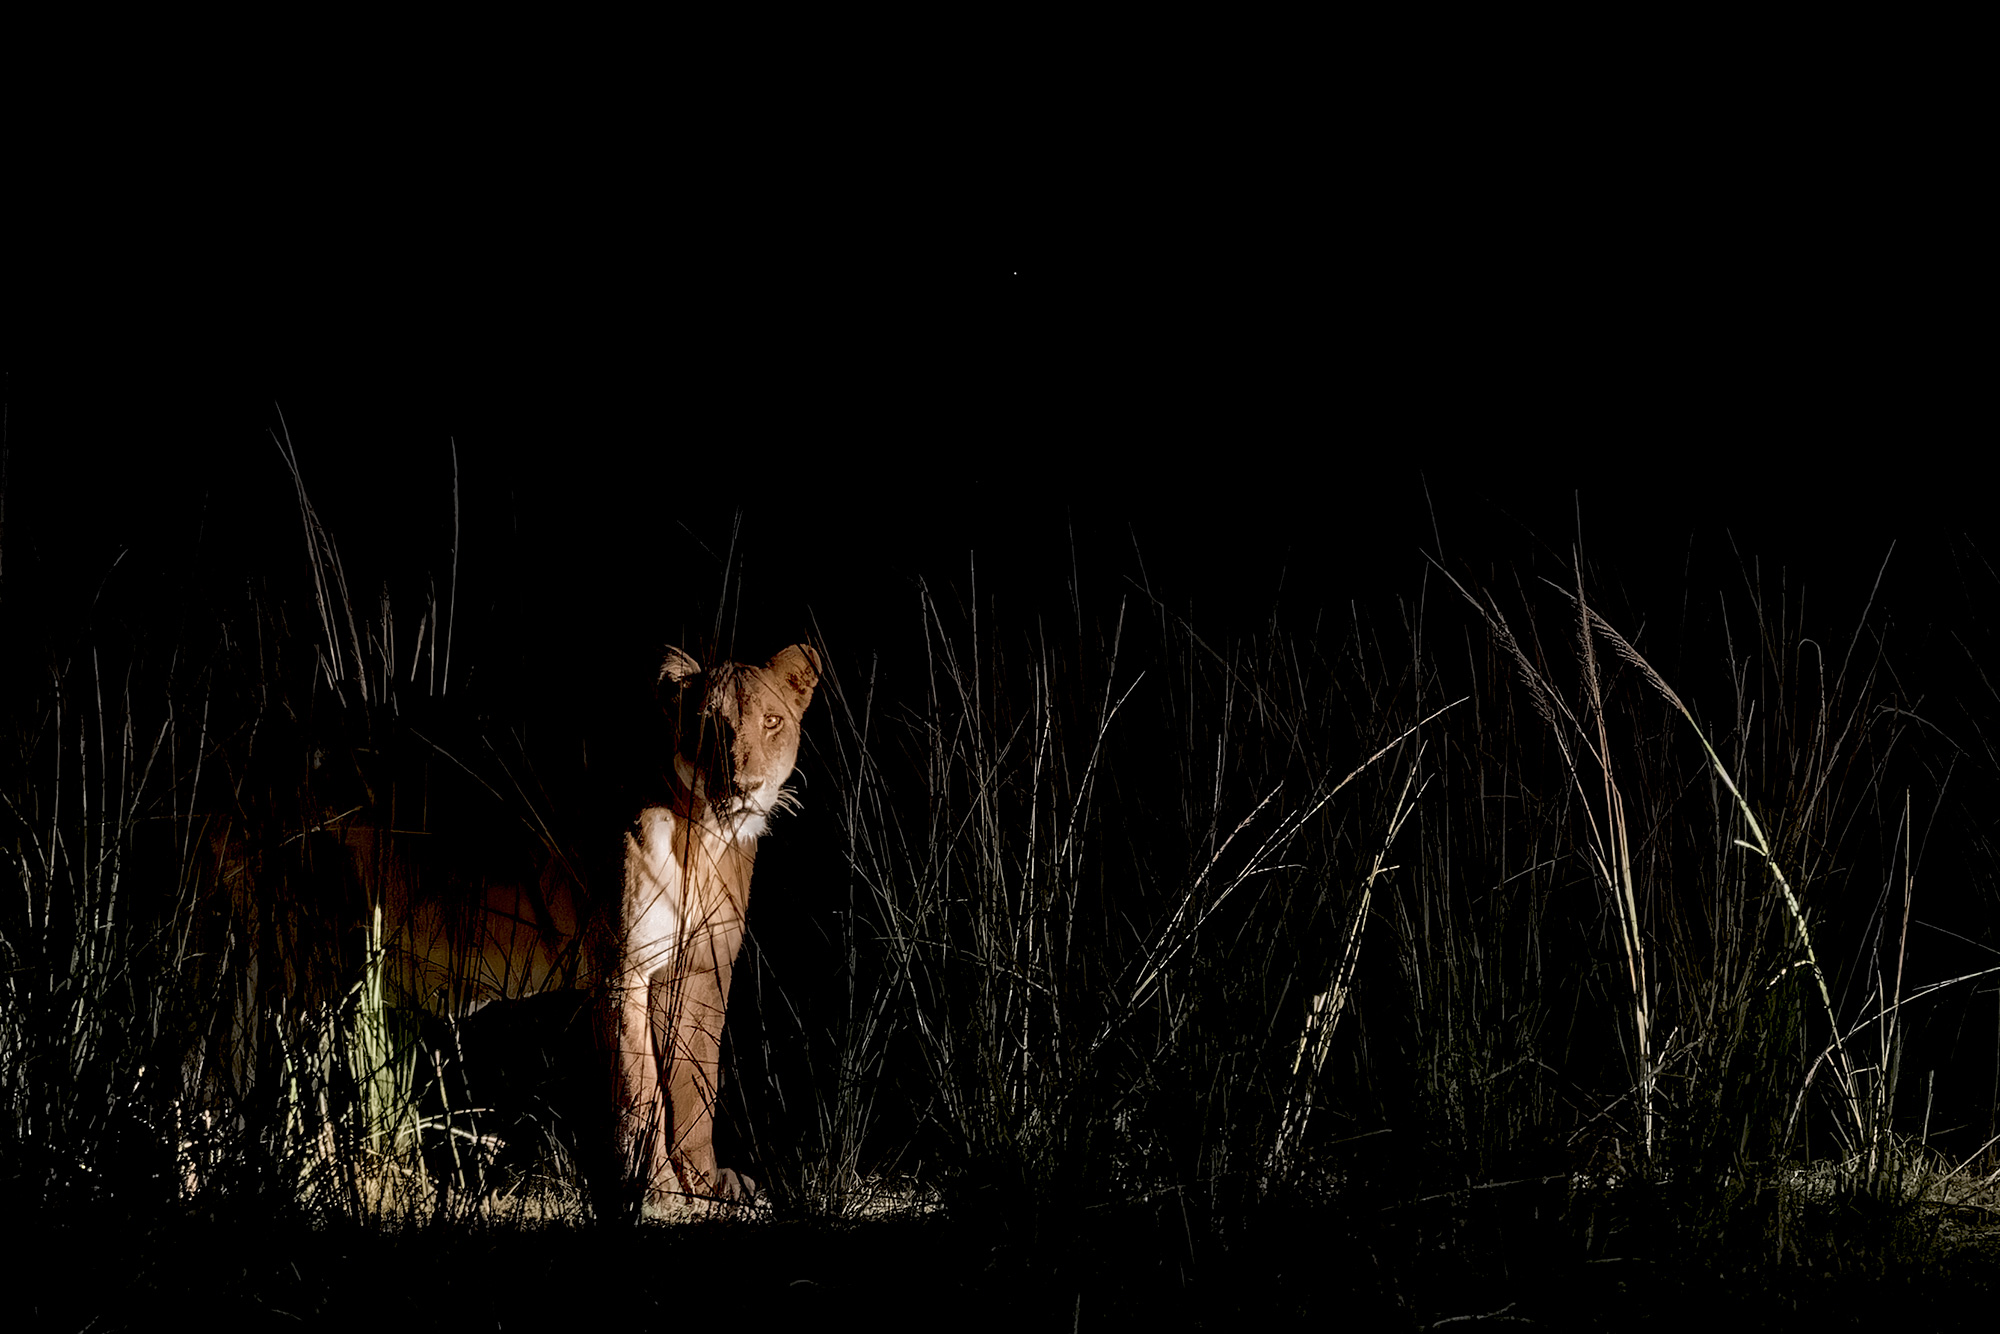 Löwe in der Nacht - Fotografiert von Benny Rebel in Sambia auf einer Fotoreise.